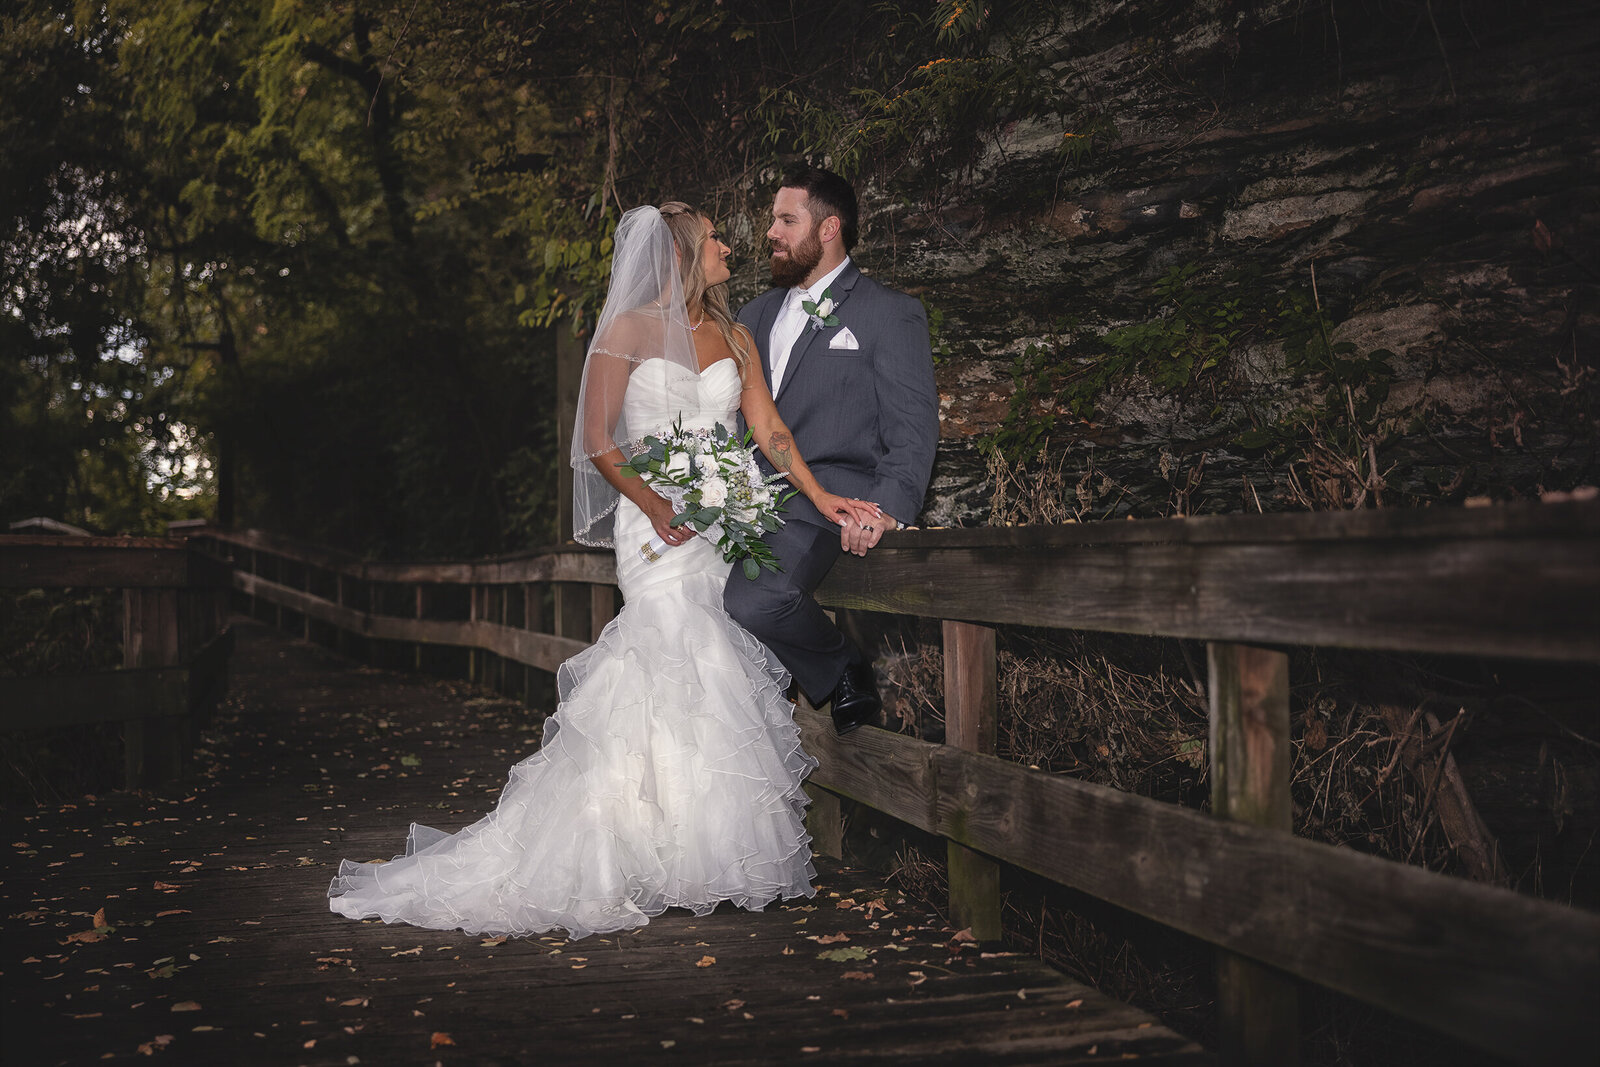 Cleveland Wedding Photography wedding photography (43 of 46)